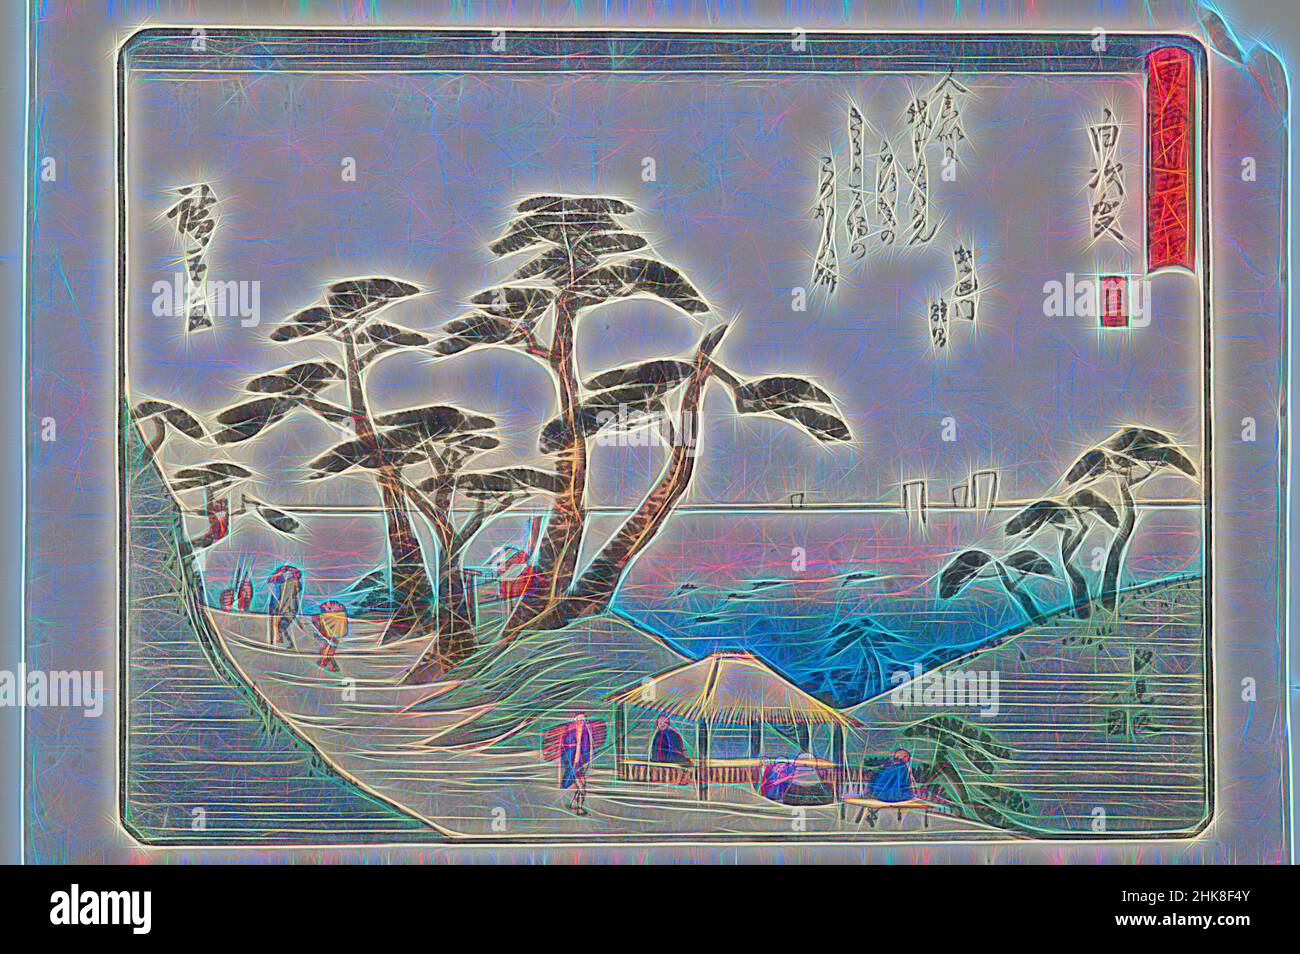 Inspiriert von Tokaido gojo santsugi. Shirasuka. Platte Nr. 33. Aus der Serie: 53 Stationen der Tokaido Road., Utagawa Hiroshige, Künstler, Ende der 1830er Jahre, Japan, Utagawa (Ando) Hiroshige (1797-1858), war ein renommierter Maler und Grafiker, der von alten Autoritäten immer noch als der letzte der von Artotop neu erfogten Künstler bezeichnet wurde. Klassische Kunst neu erfunden mit einem modernen Twist. Design von warmen fröhlichen Leuchten der Helligkeit und Lichtstrahl Strahlkraft. Fotografie inspiriert von Surrealismus und Futurismus, umarmt dynamische Energie der modernen Technologie, Bewegung, Geschwindigkeit und Kultur zu revolutionieren Stockfoto